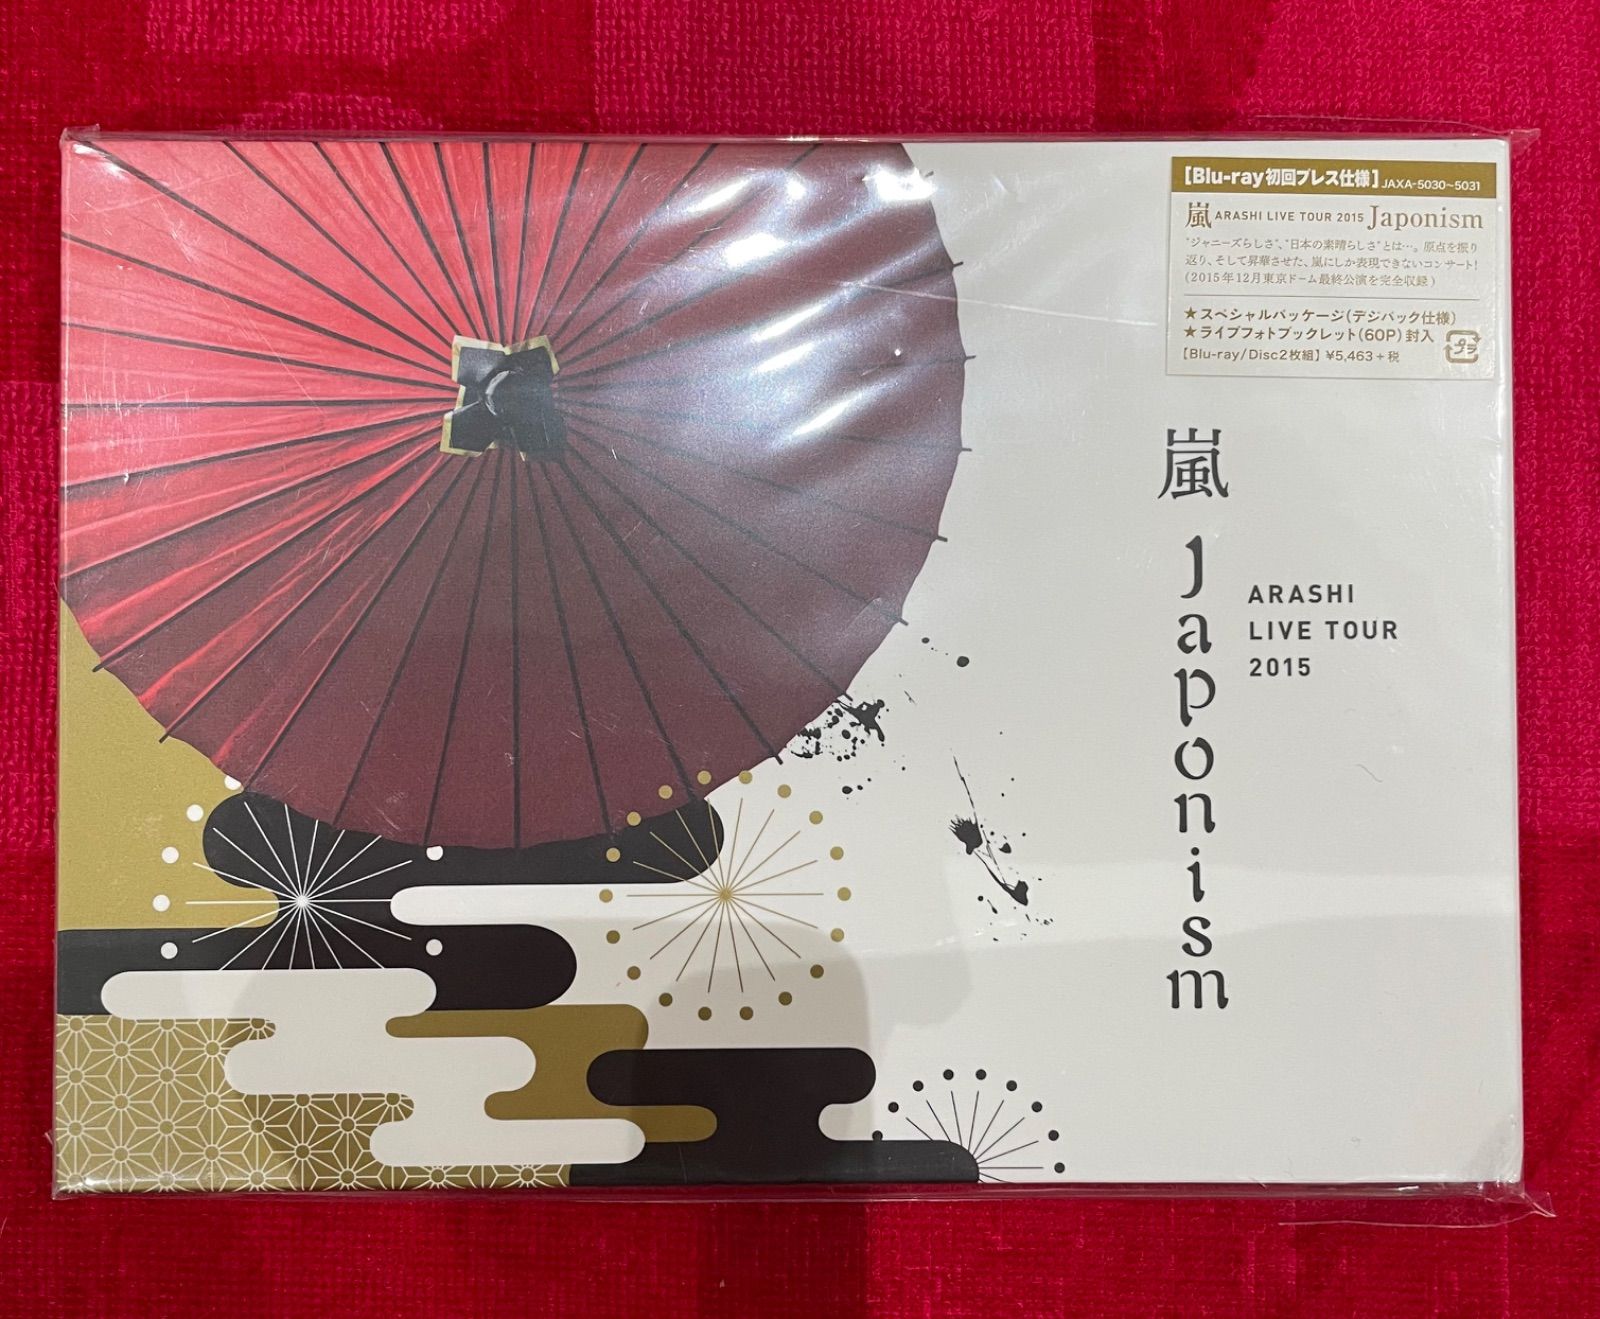 嵐/Japonism Blu-ray 初回プレス仕様 - kirara3happyショップ - メルカリ